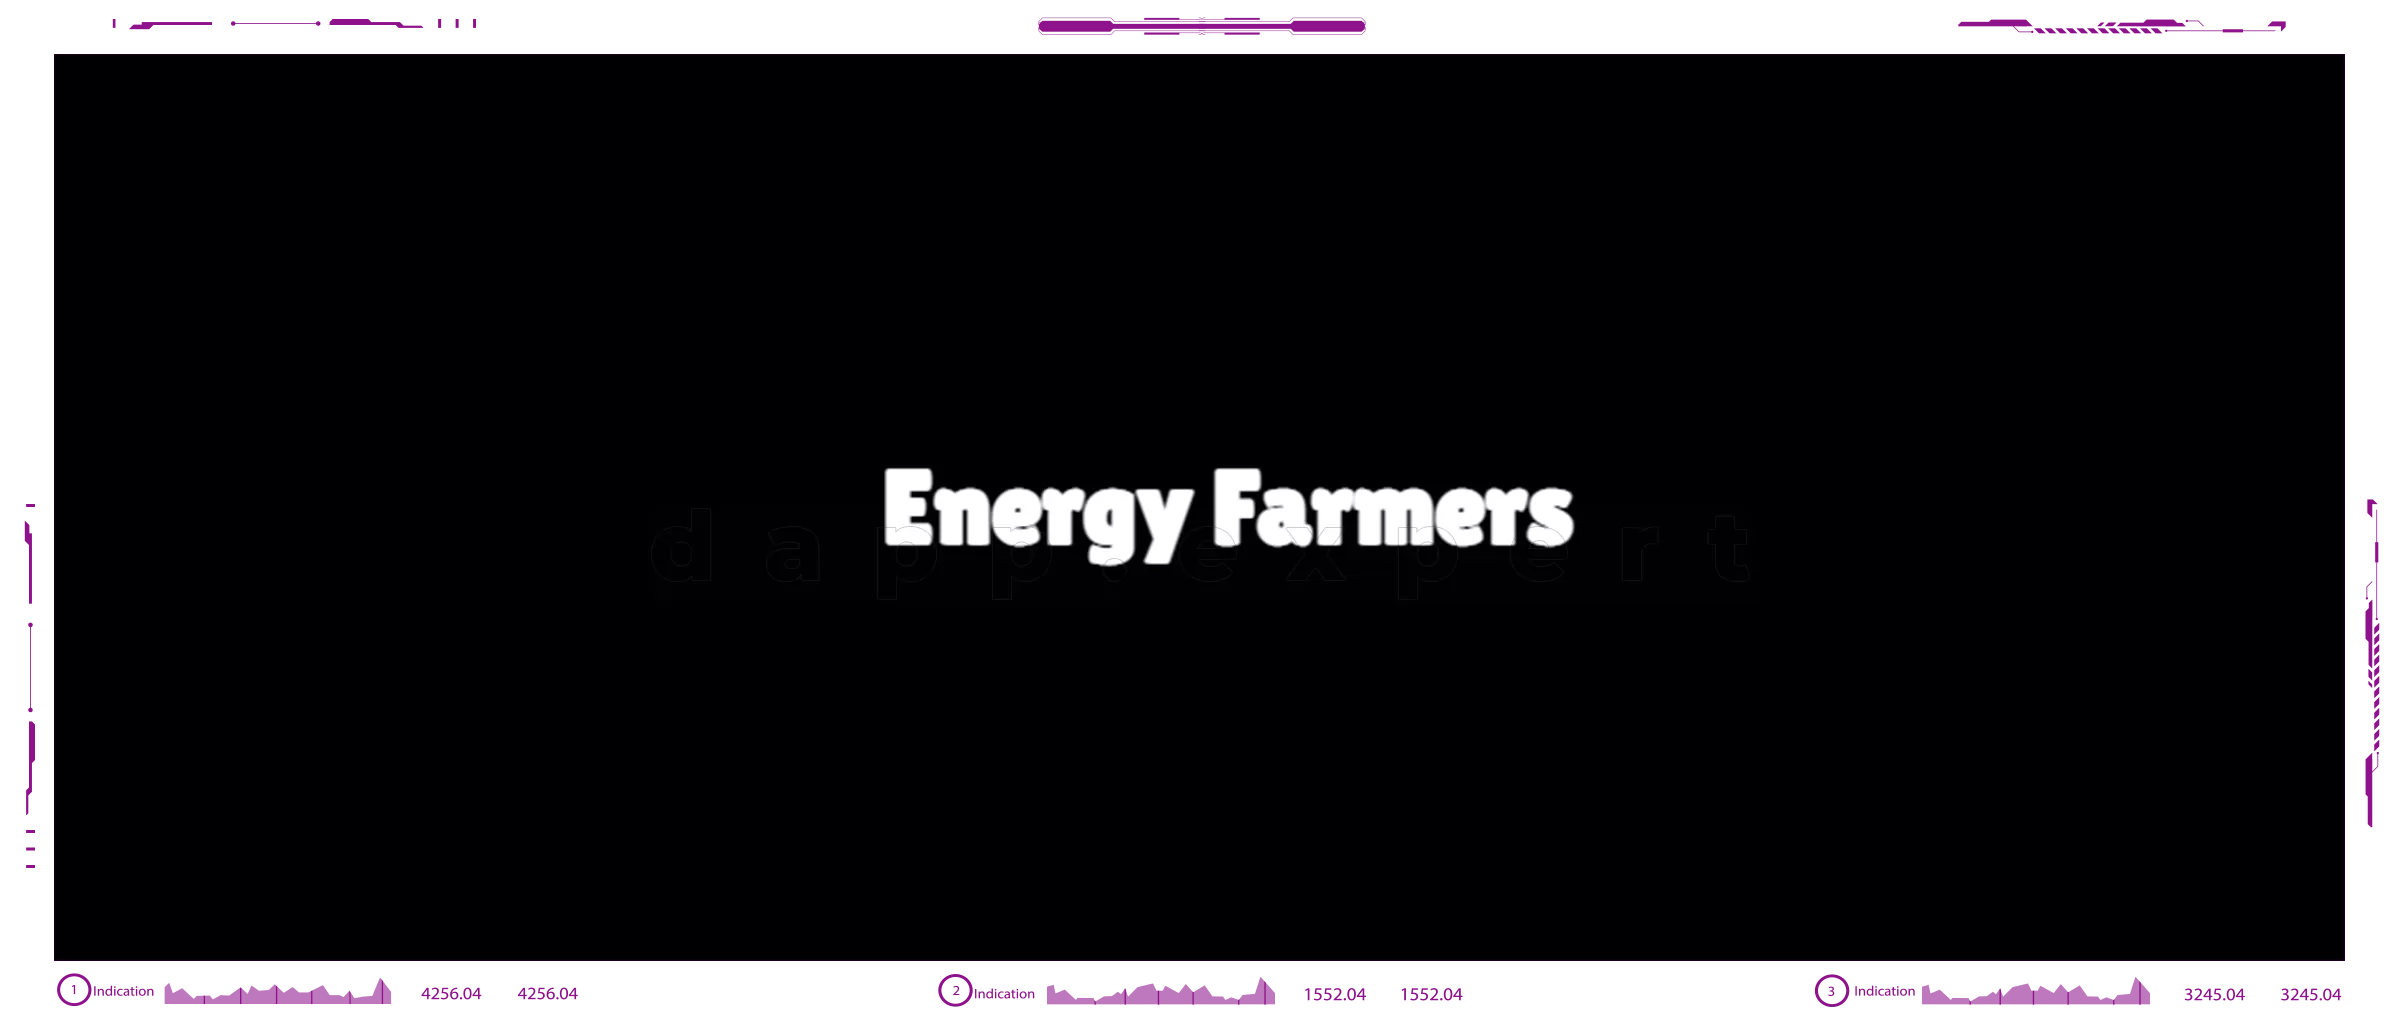 Dapp Energy Farmers